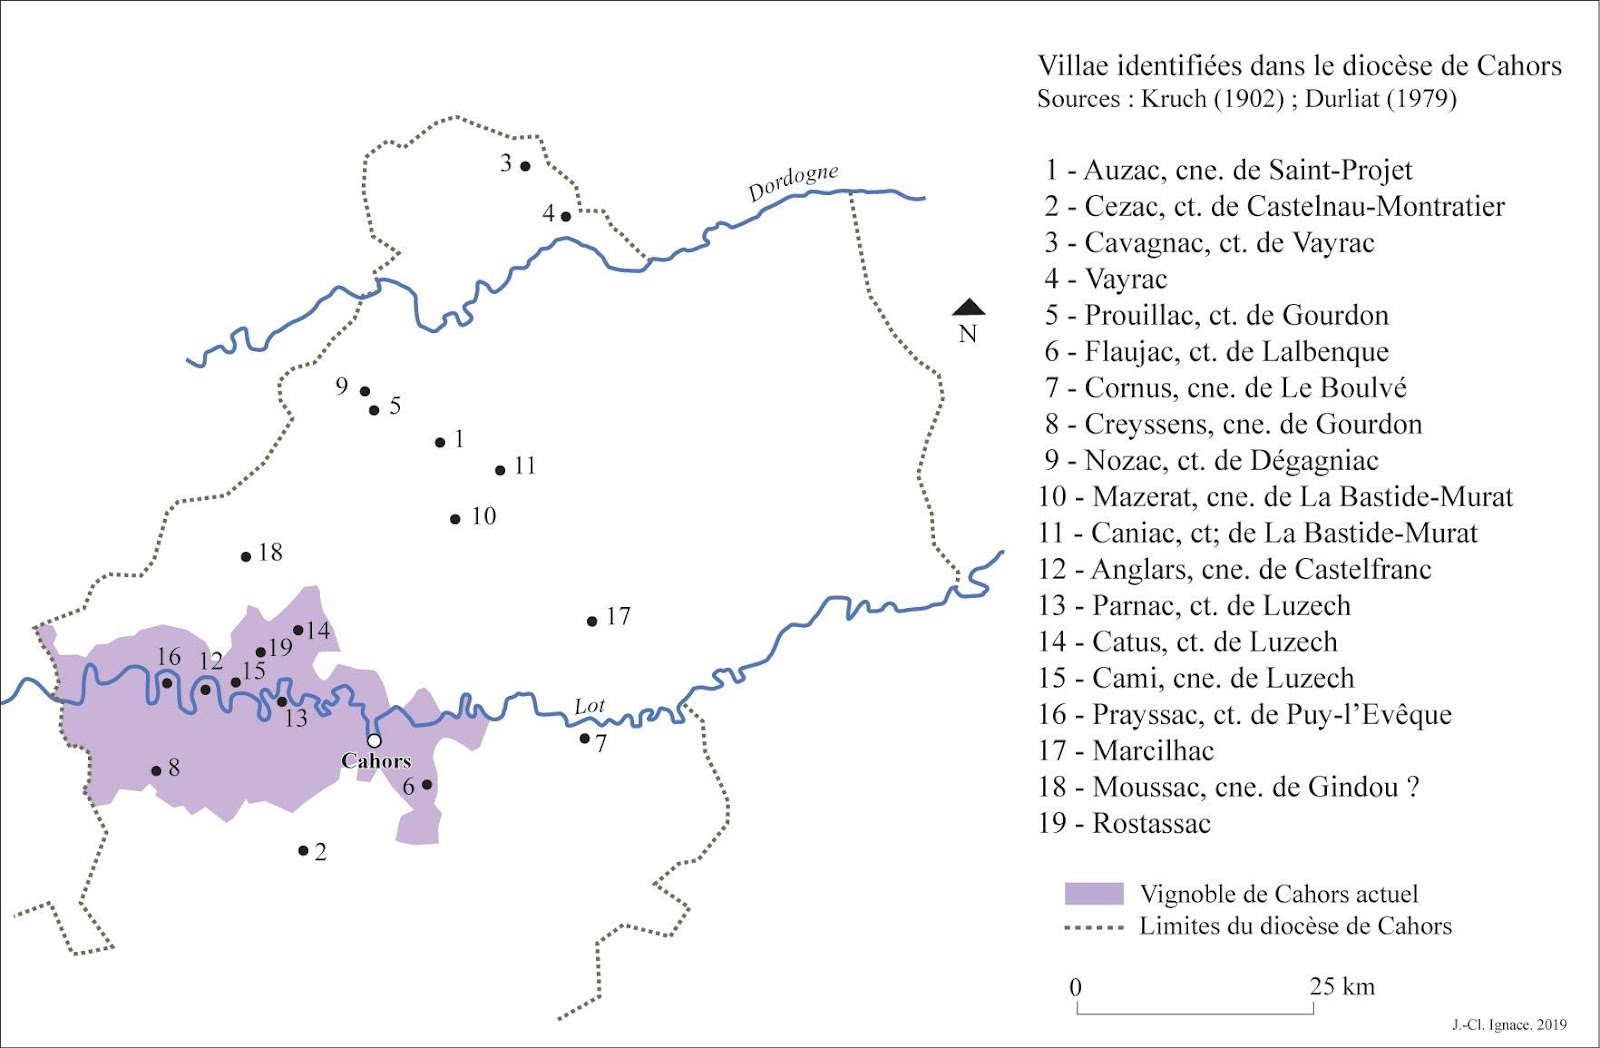 Carte localisant les domaines de Didier dans le diocèse de Cahors, par rapport au vignoble actuel